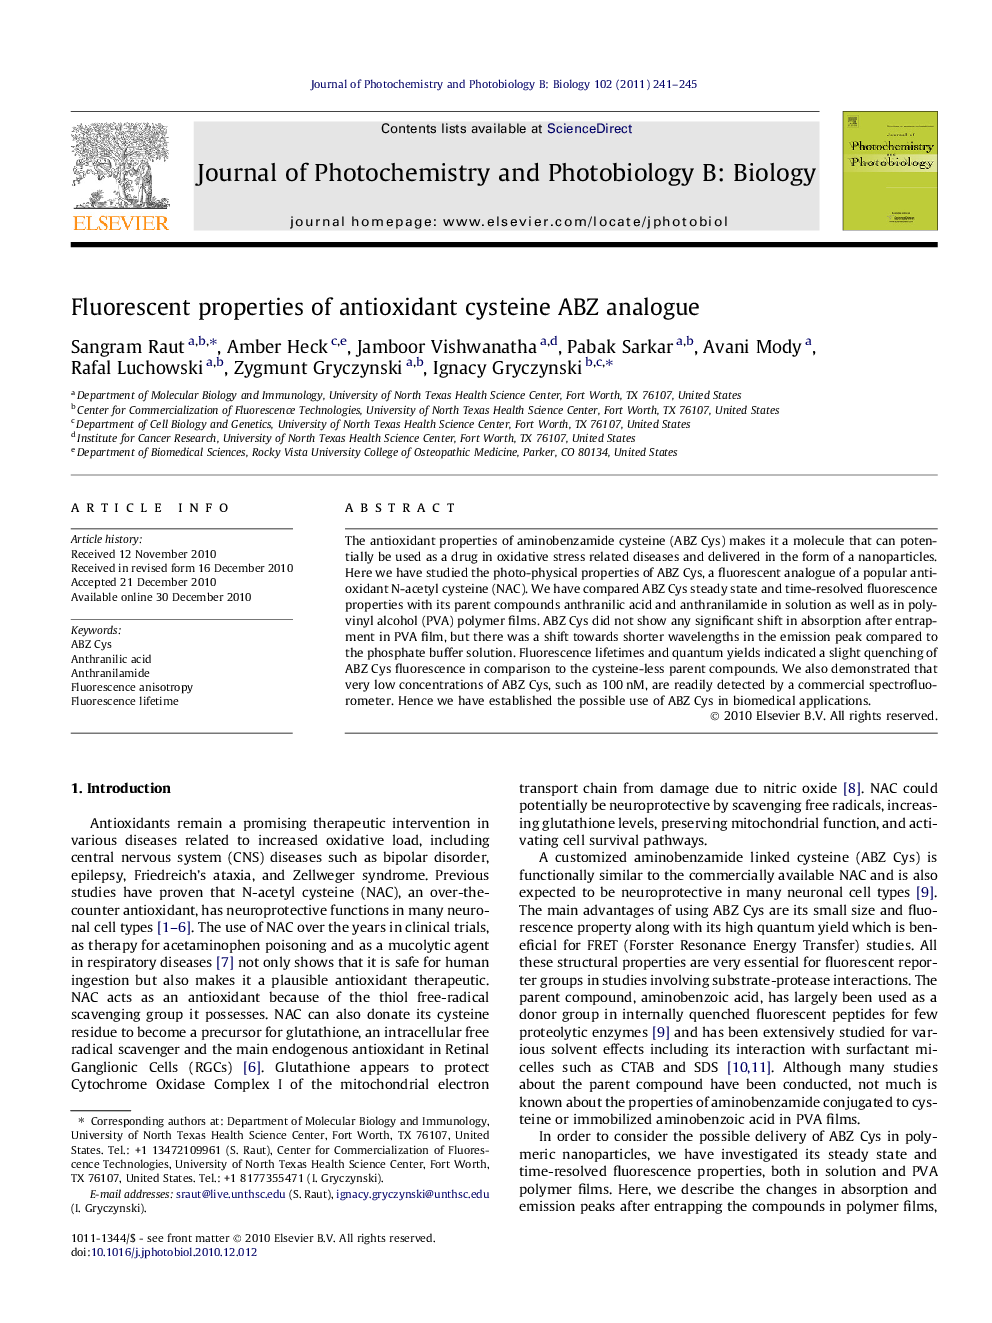 Fluorescent properties of antioxidant cysteine ABZ analogue